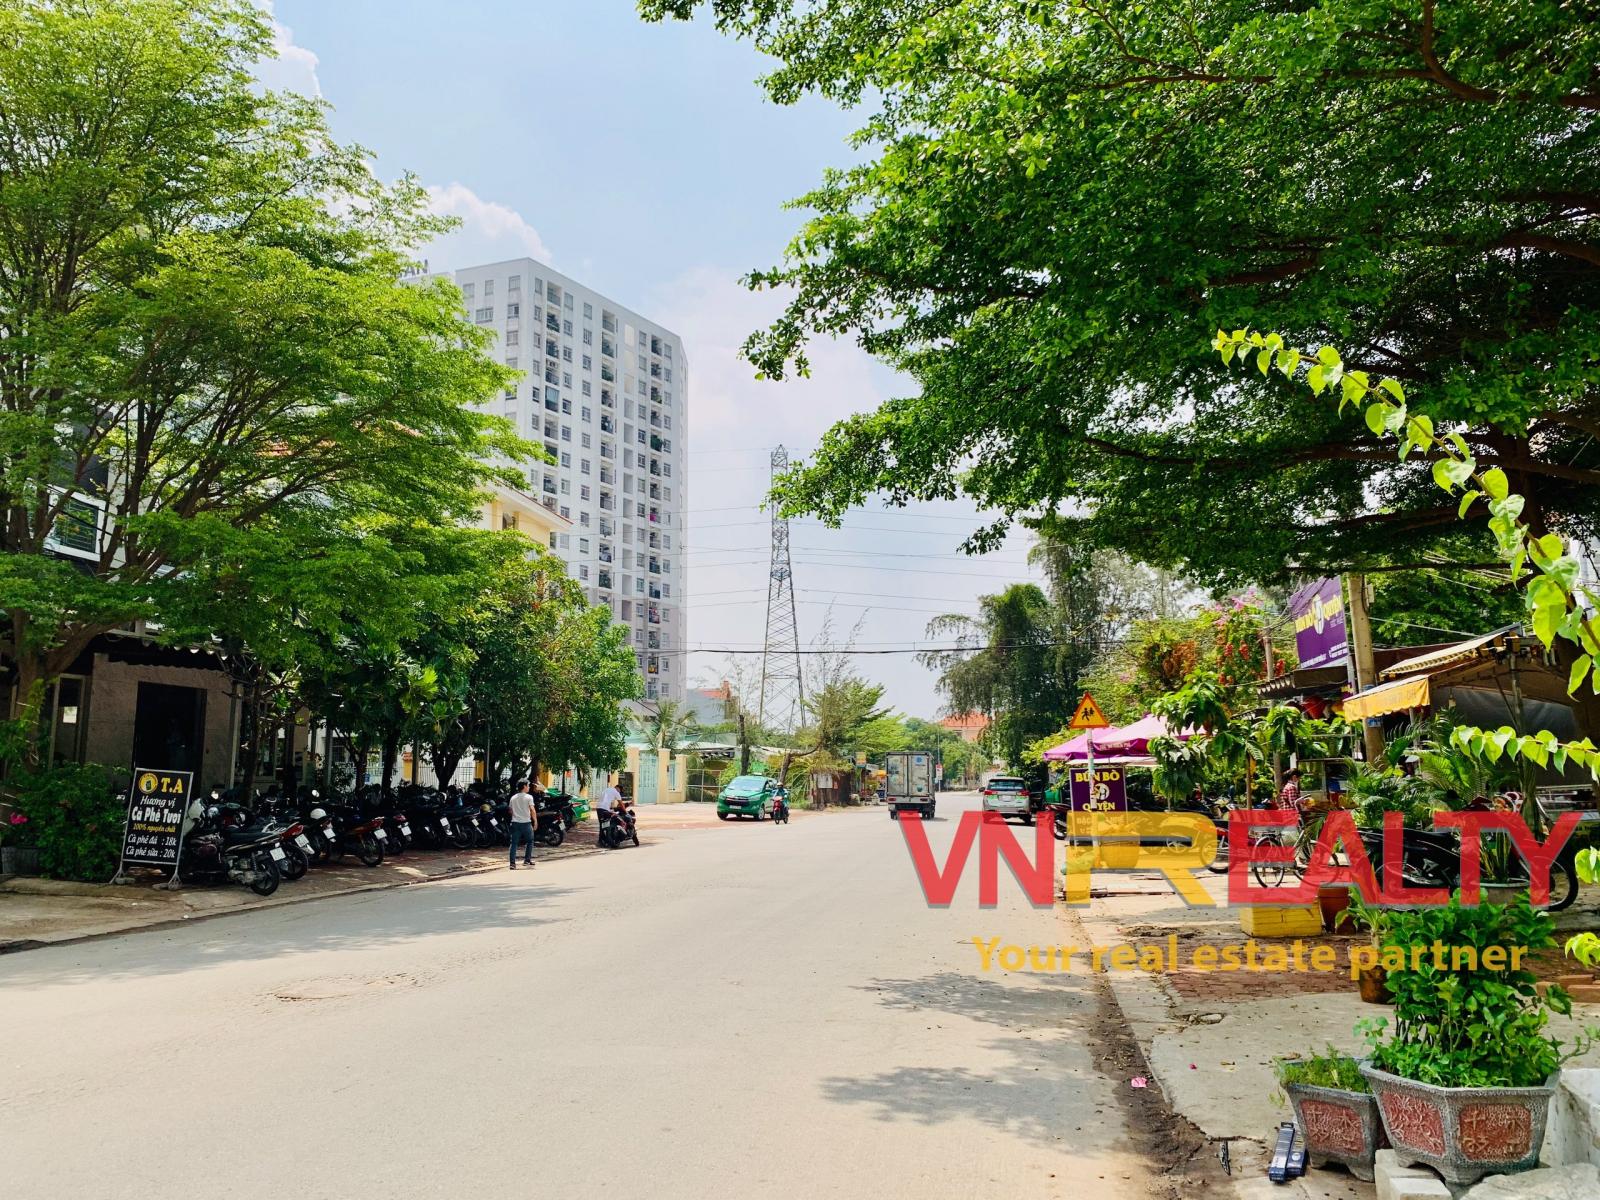 Cần bán nhà phố 3 tầng mặt tiền 30m đường Phú Thuận khu dân cư Nam Long Phú Thuận.